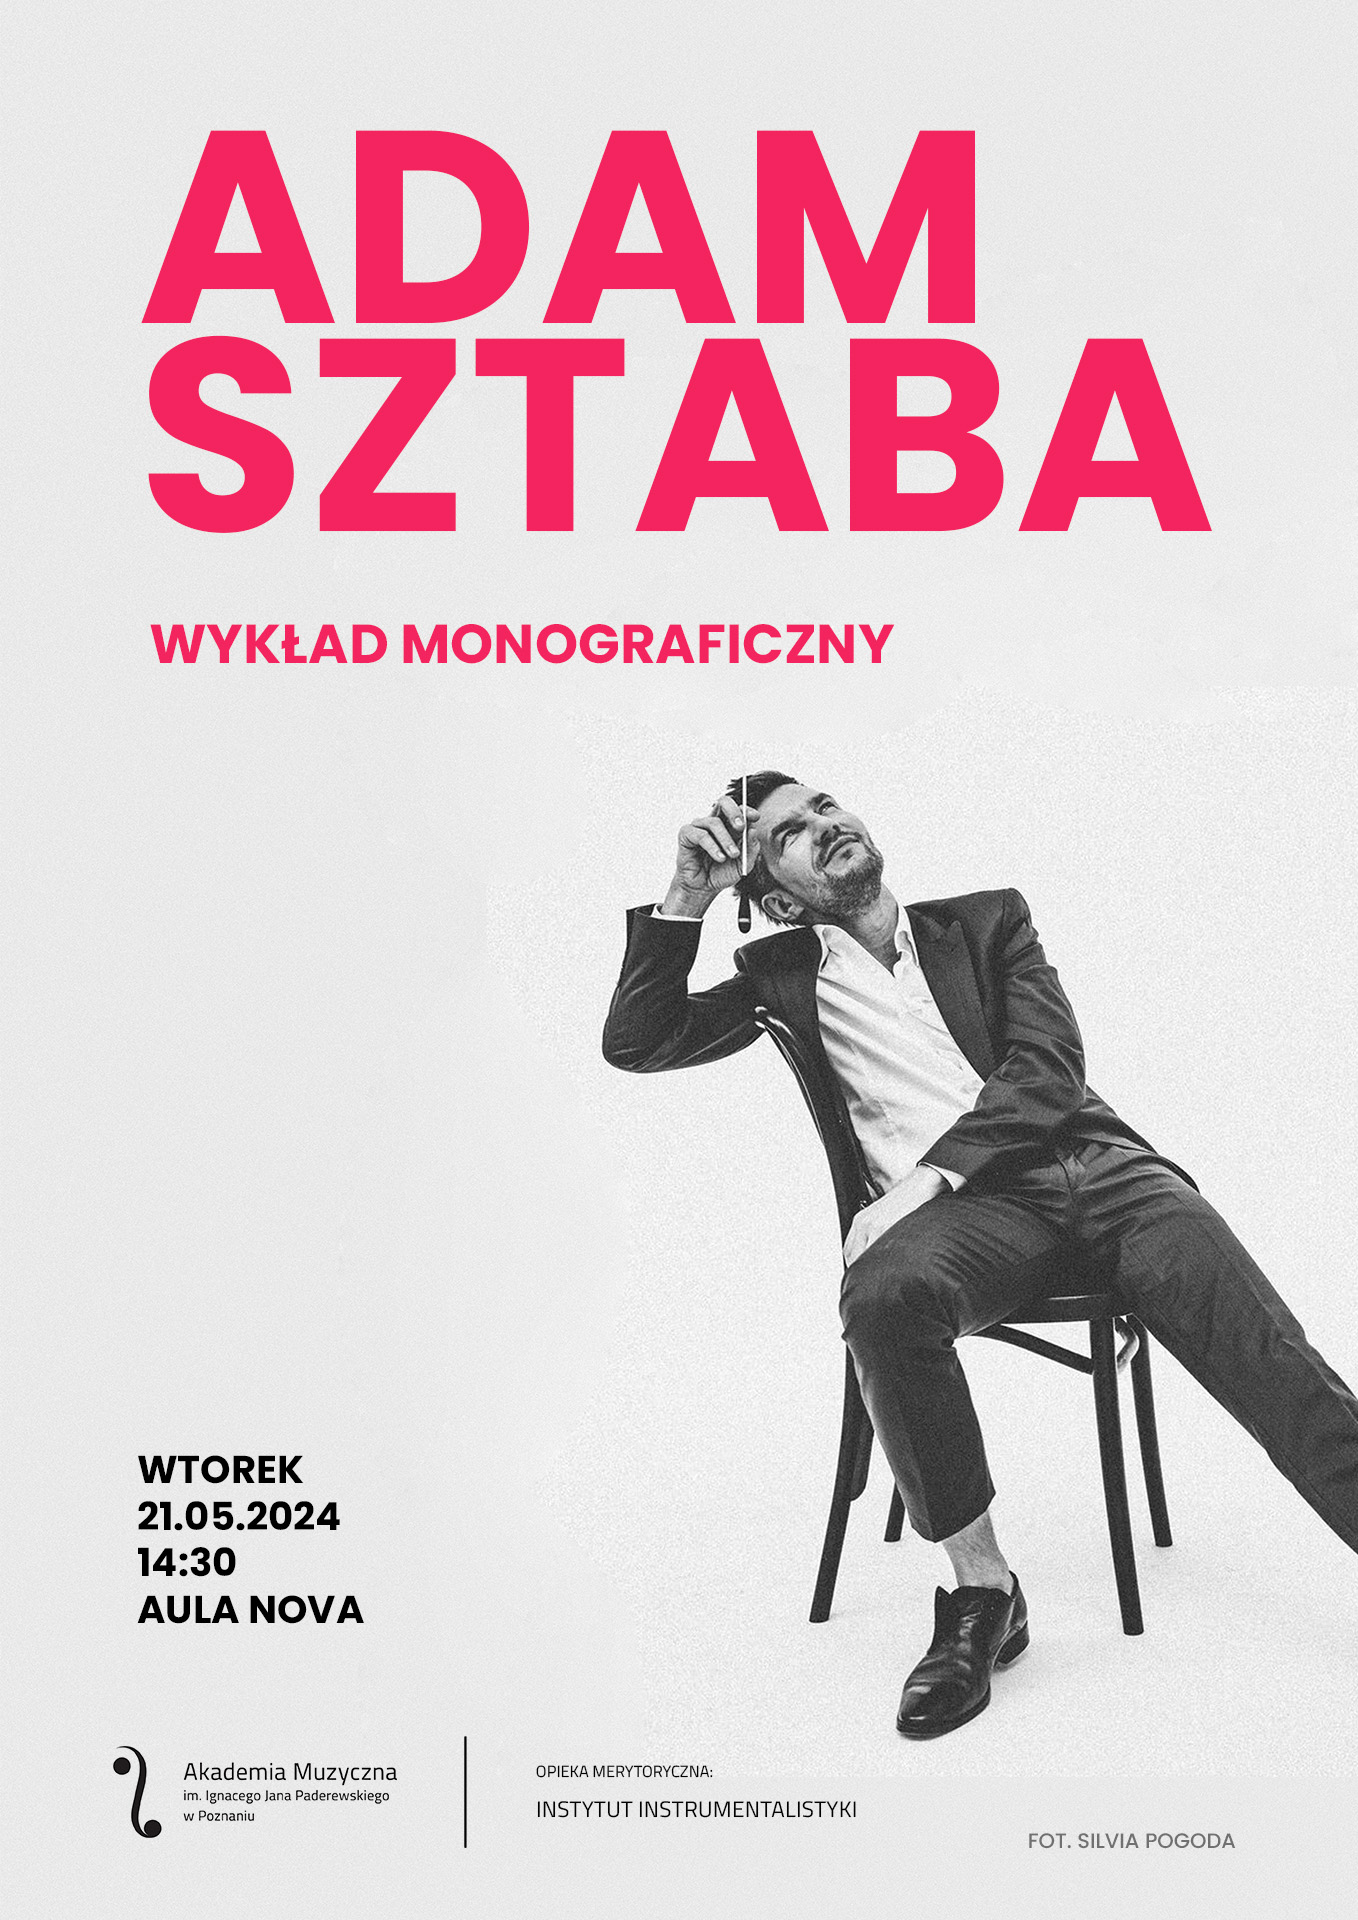 Afisz zawiera informacje na temat wykładu monograficznego Adama Sztaby w nowym terminie 21 maja 2024